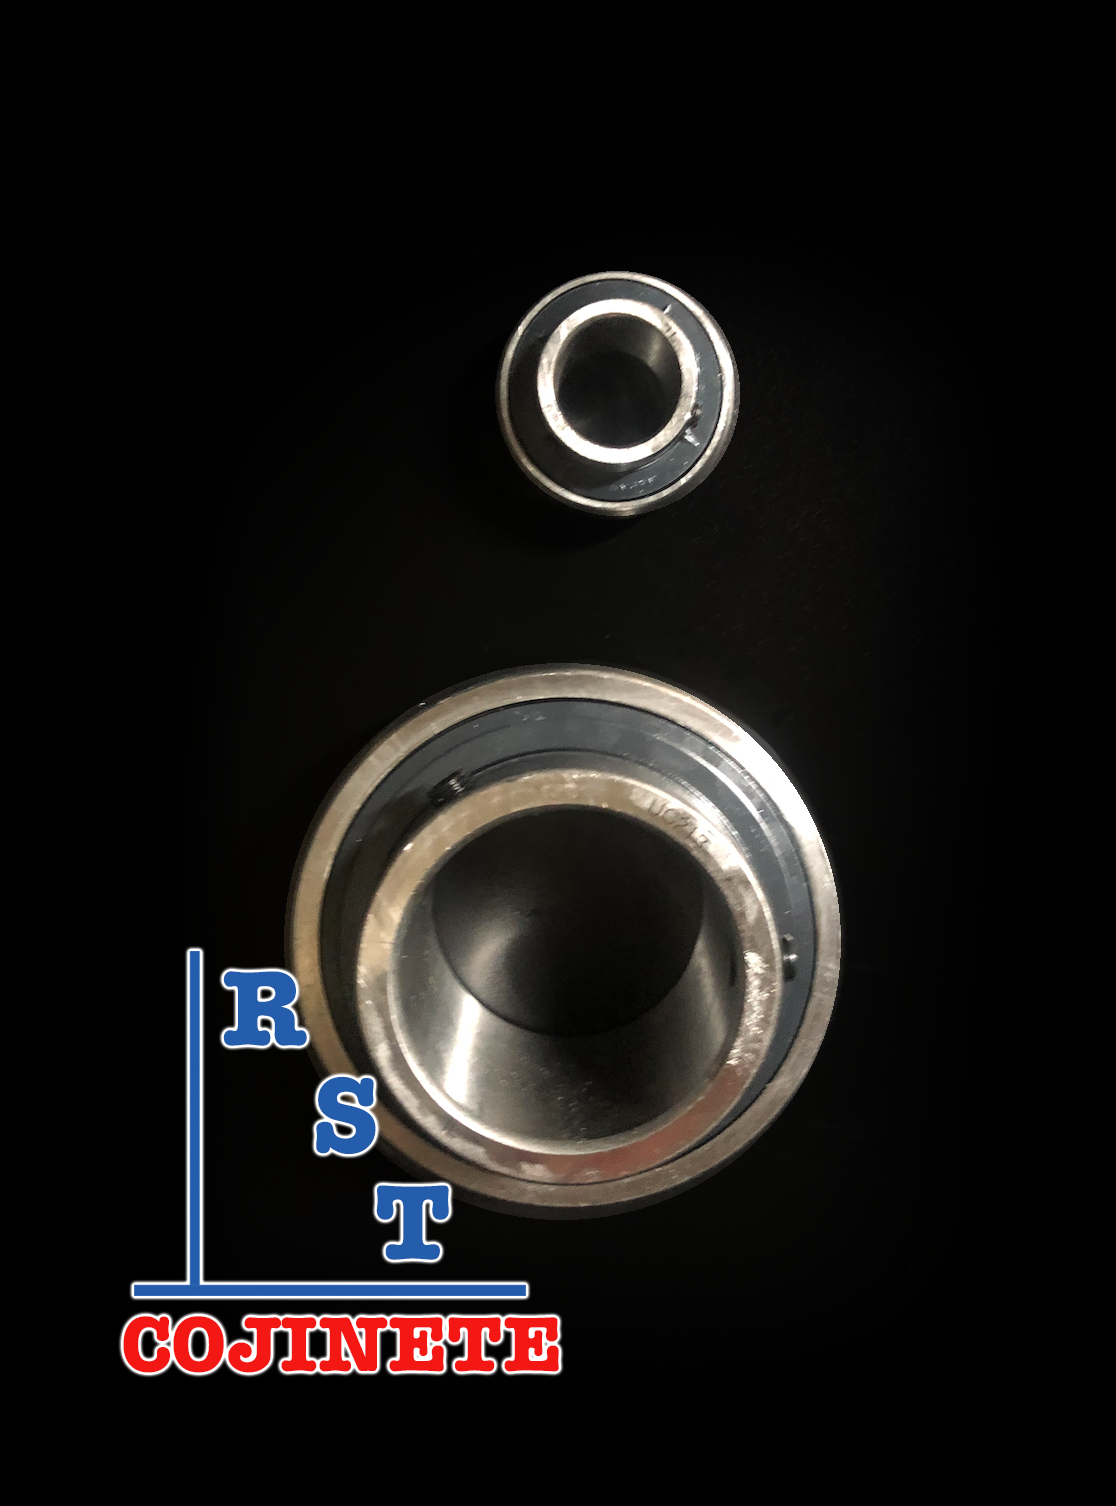 Cojinete insertable UC218-56 | Rodamiento para eje de 3-½" rígido de bolas con sello de hule para chumacera